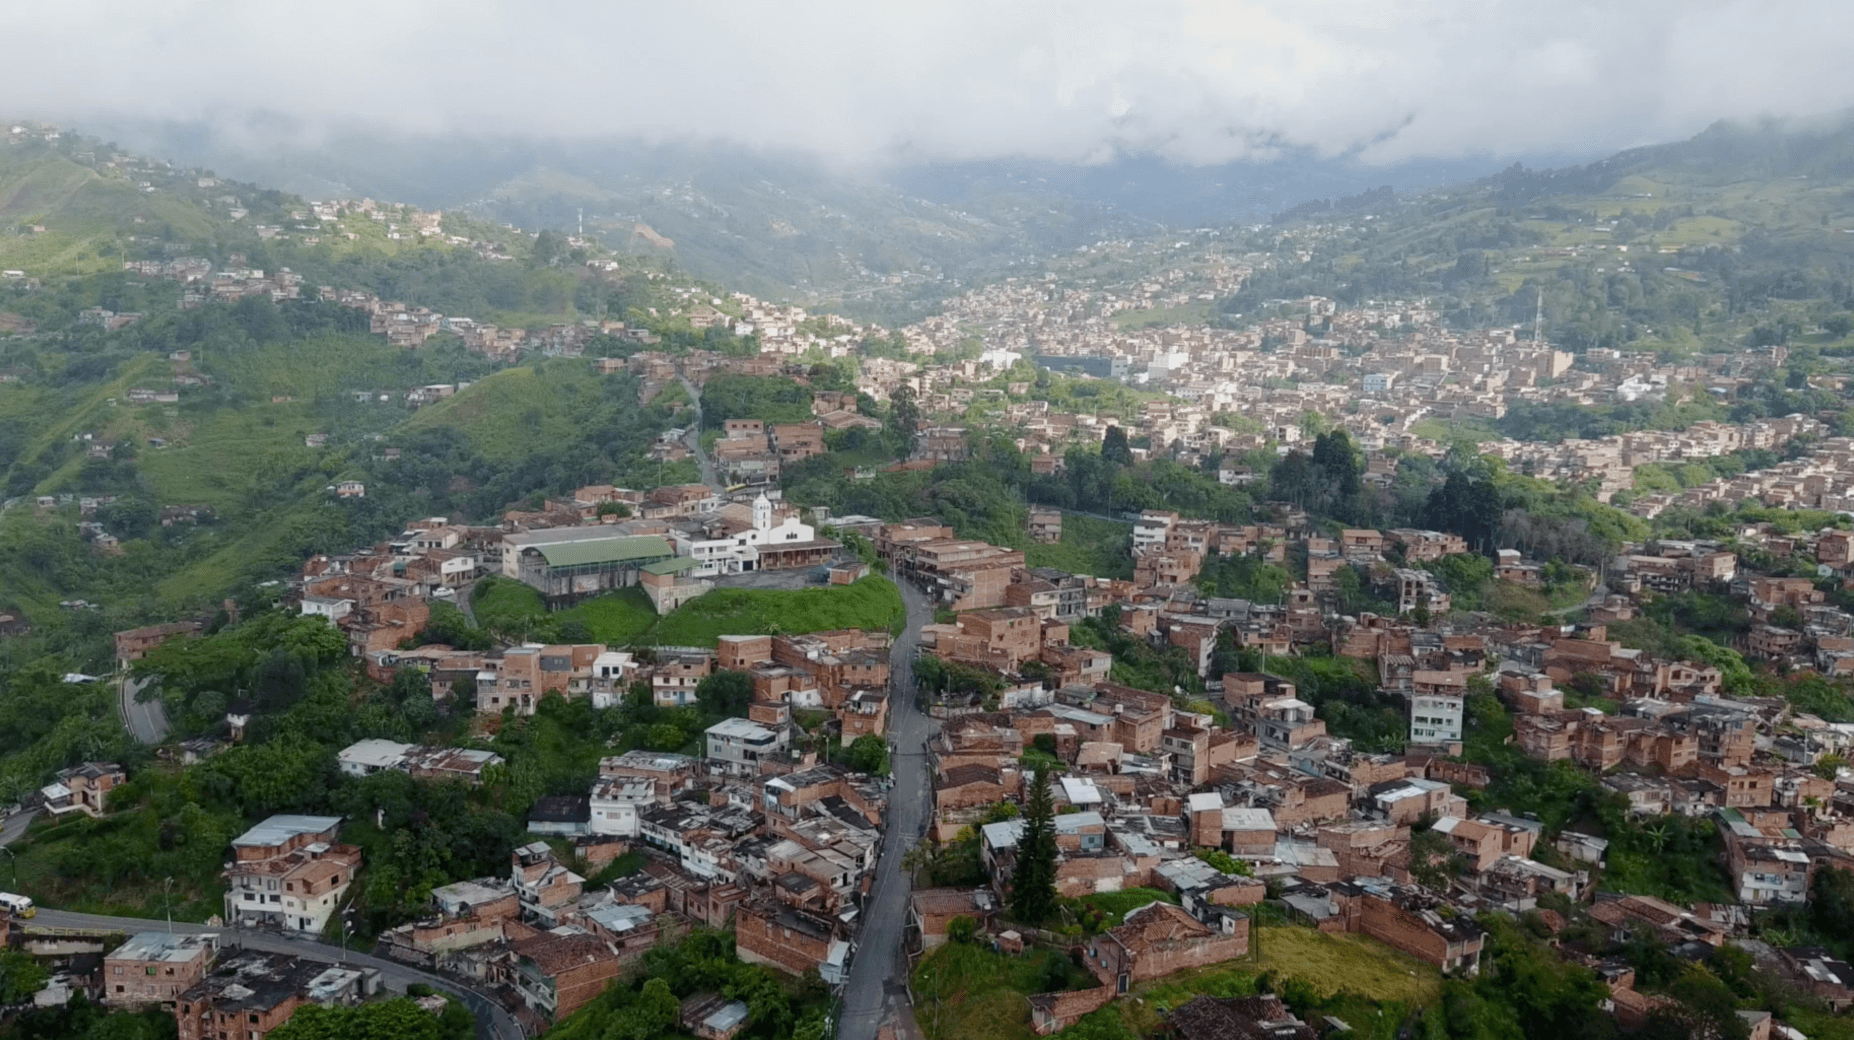 Medellinlab